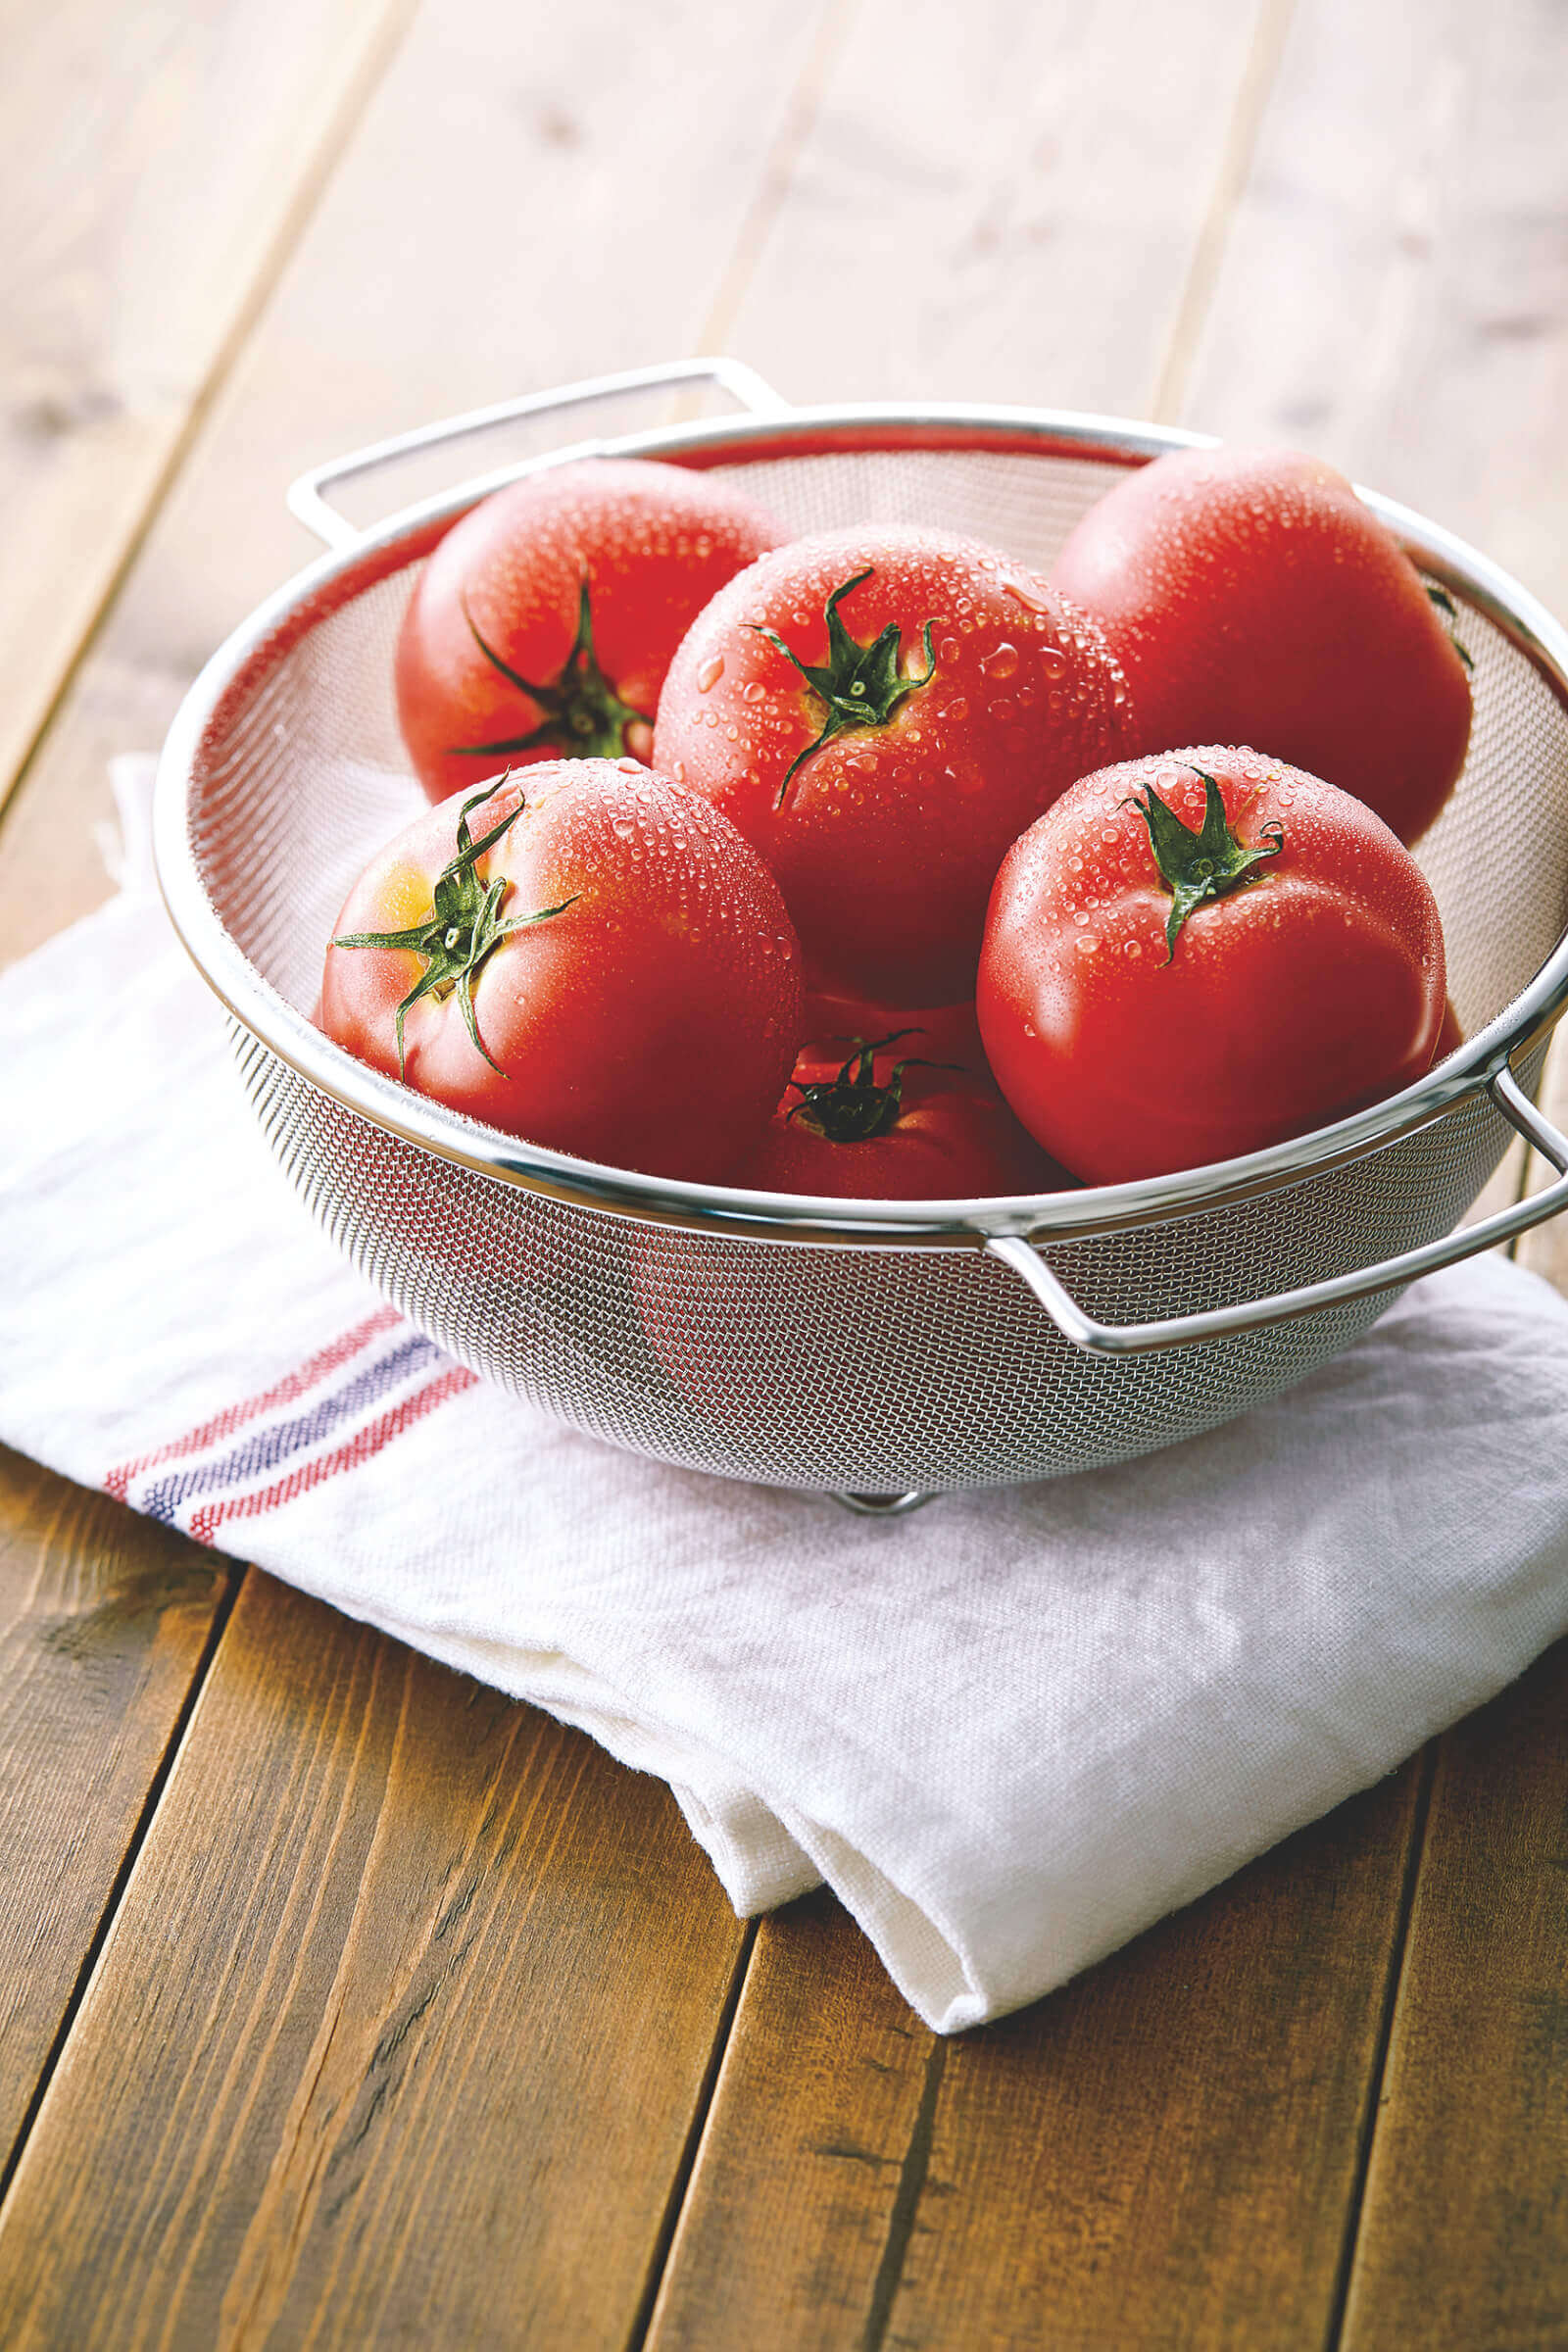 糖度の高さとバランスのよい酸味が、トマトの概念を変える「デリシャストマト」